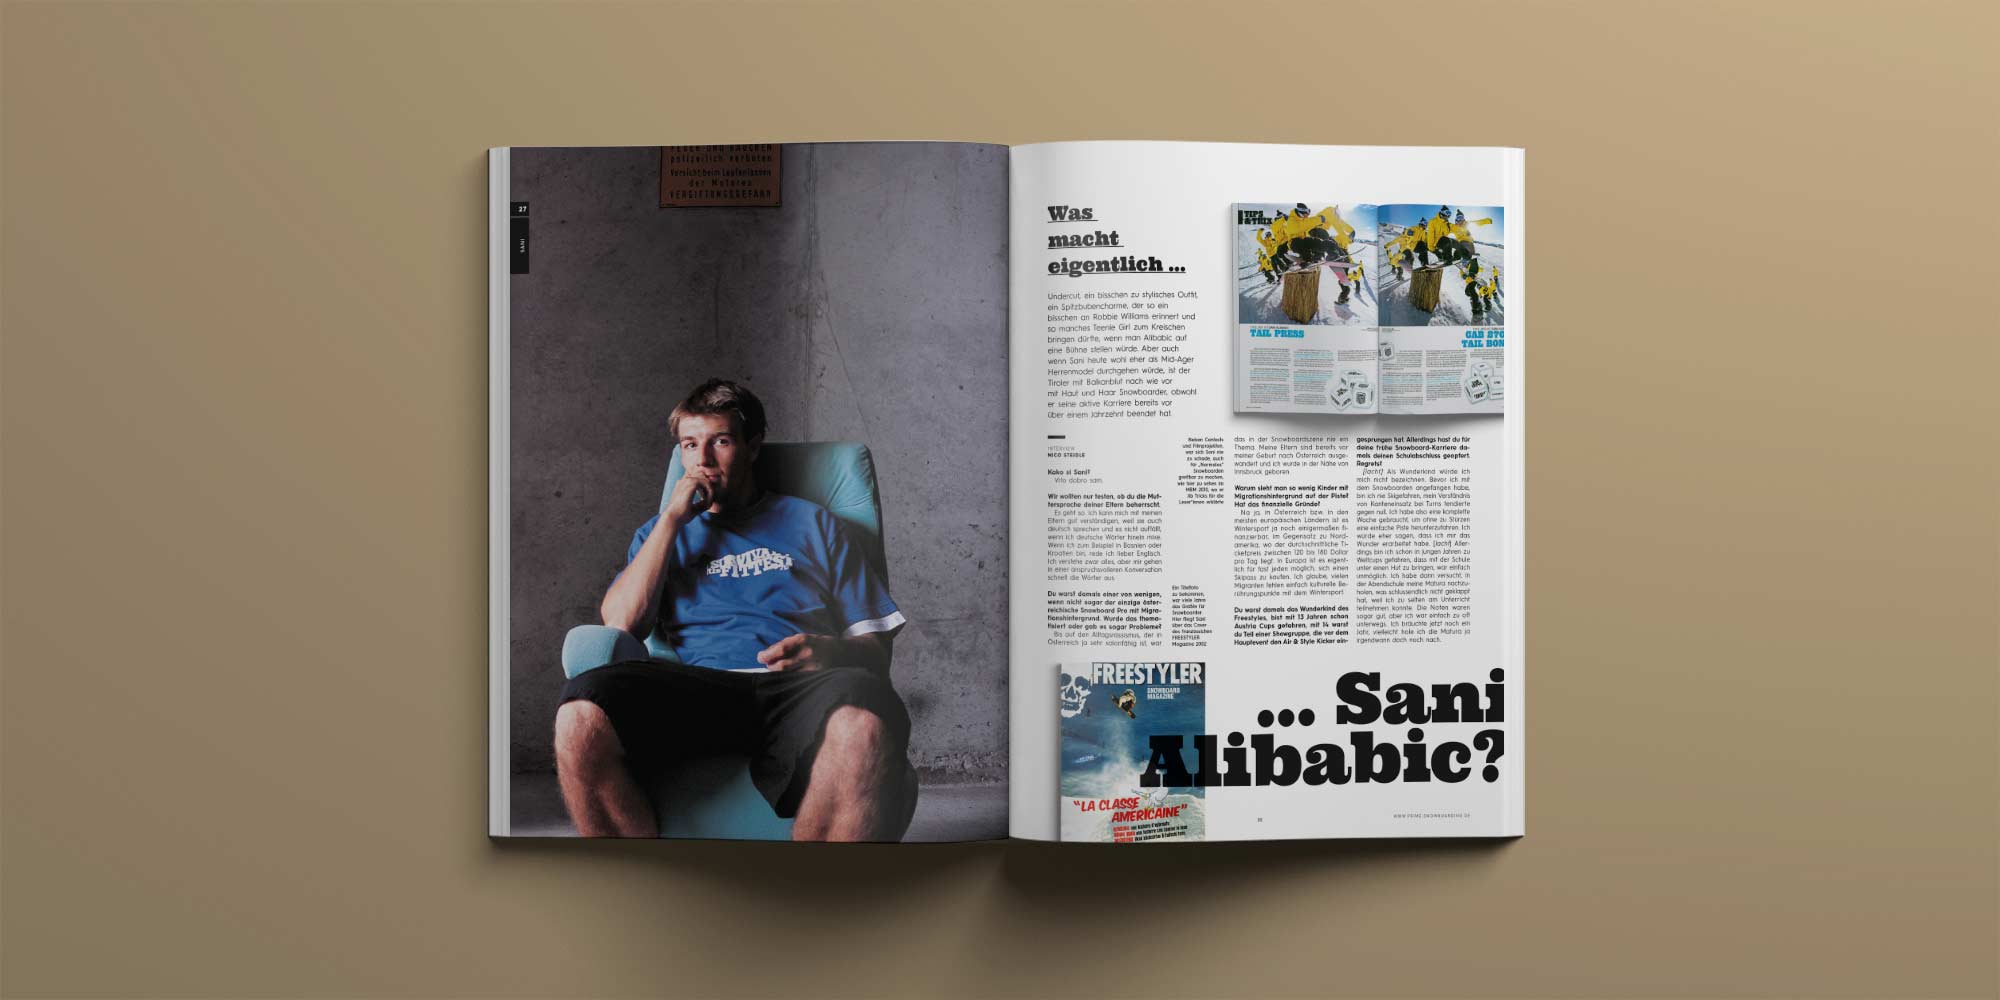 PRIME Snowboarding Magazine #27 - Was macht eigentlich ... Sani Alibabic?